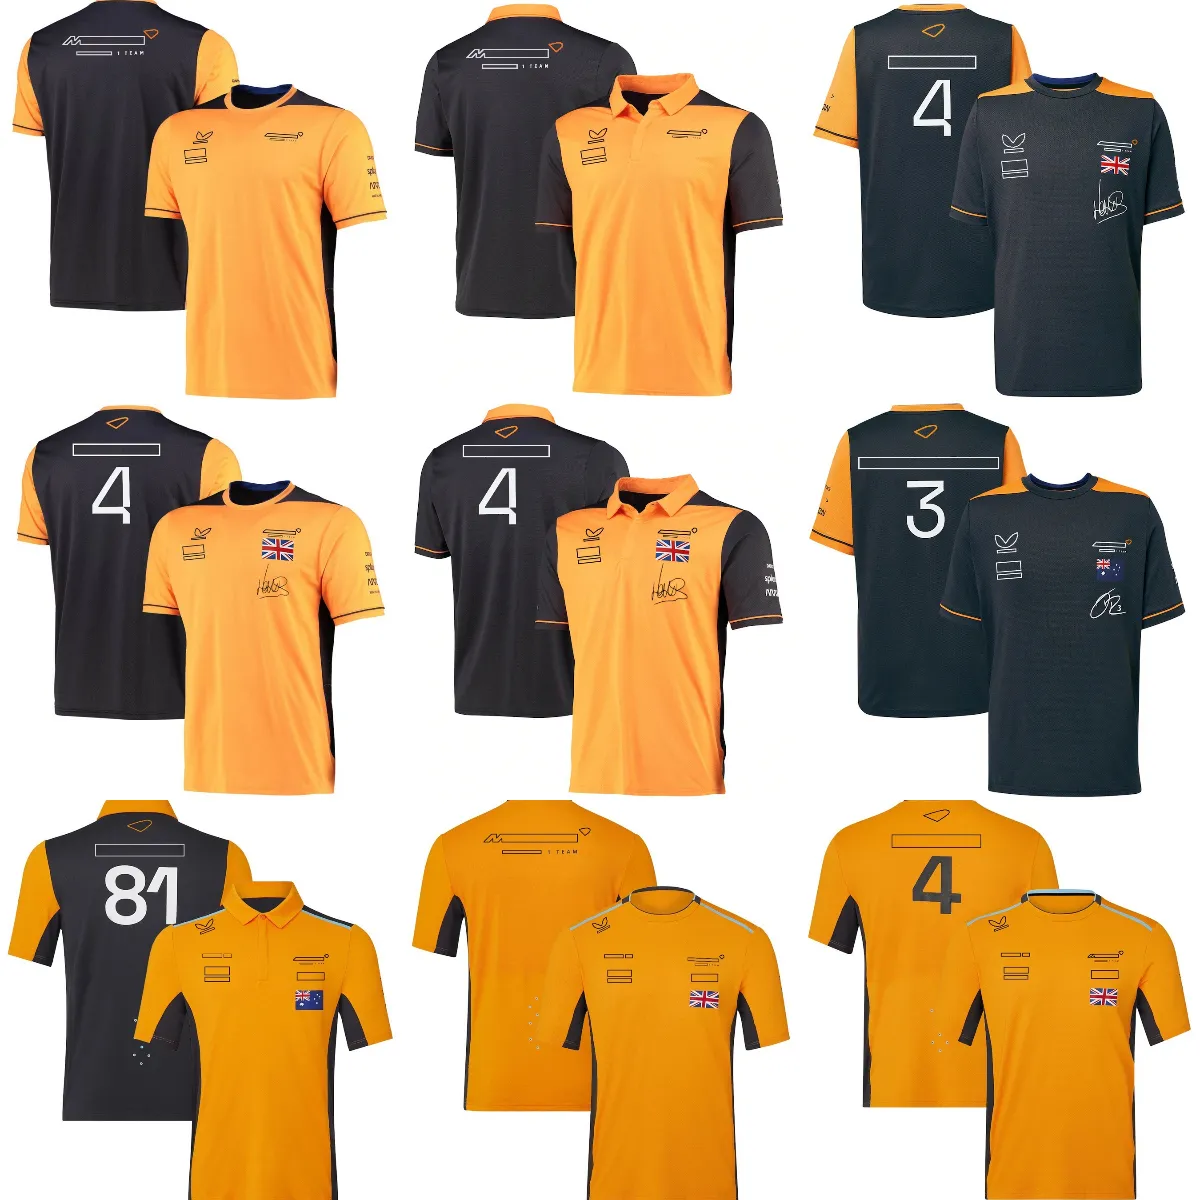 포뮬러 1 티셔츠 2022-2023 F1 팀 폴로 셔츠 티셔츠 레이싱 스포츠 스포츠 통기성 저지 여름 레이스 브랜드 남성 인쇄 티셔츠